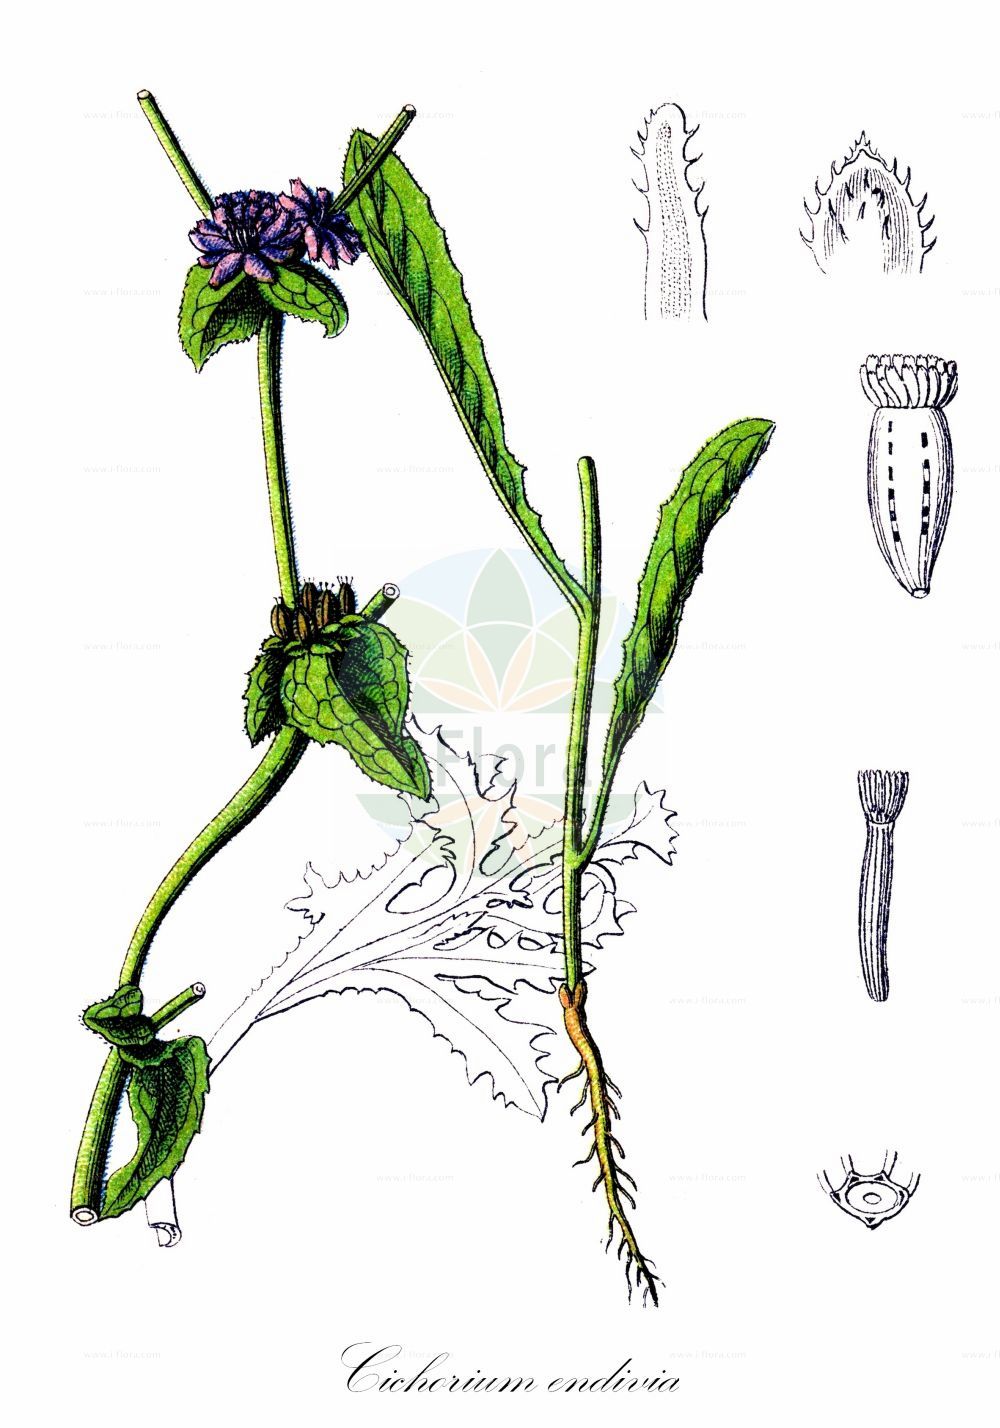 Historische Abbildung von Cichorium endivia (Winter-Endivie - Endive). Das Bild zeigt Blatt, Bluete, Frucht und Same. ---- Historical Drawing of Cichorium endivia (Winter-Endivie - Endive). The image is showing leaf, flower, fruit and seed.(Cichorium endivia,Winter-Endivie,Endive,Cichorium endivia,Cichorium endivia subsp. sativum,Winter-Endivie,Endivie,Endive,Cultivated Endive,Cichorium,Wegwarte,Chicory,Asteraceae,Korbblütengewächse,Daisy family,Blatt,Bluete,Frucht,Same,leaf,flower,fruit,seed,Sturm (1796f))